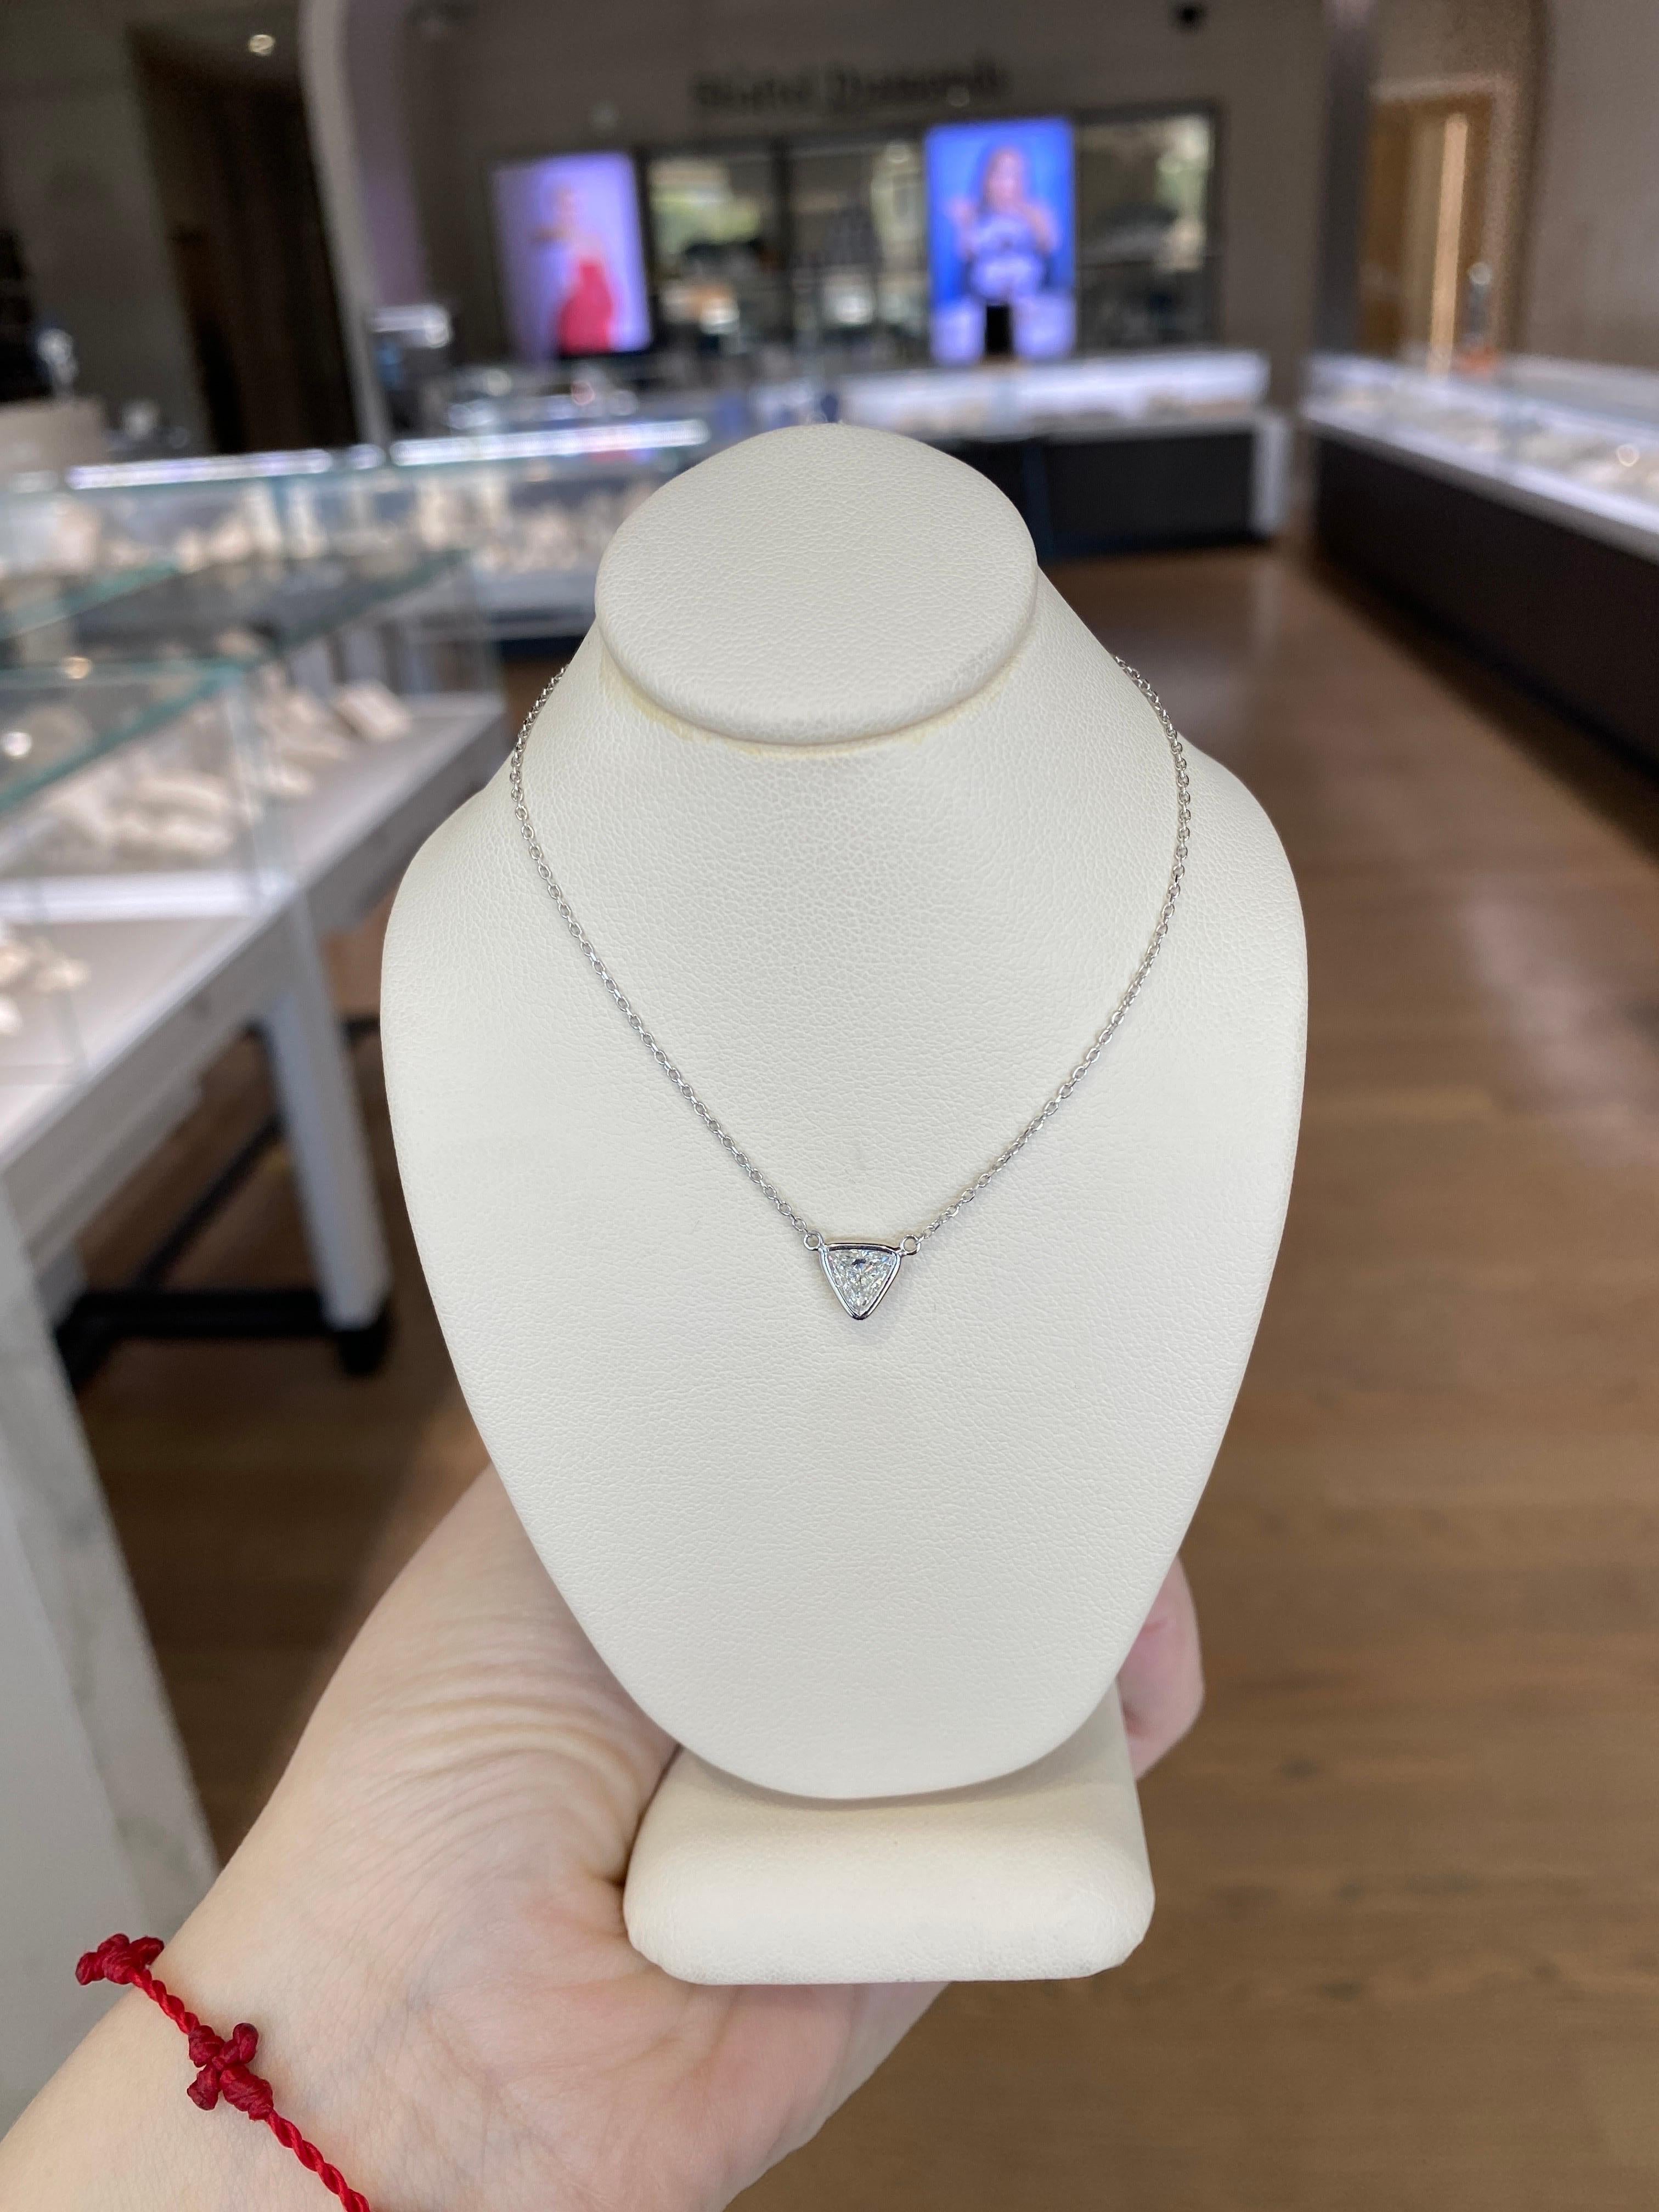 0.46 Carat Natural Trillion Cut Diamond Pendant Necklace, 14k White Gold For Sale 7